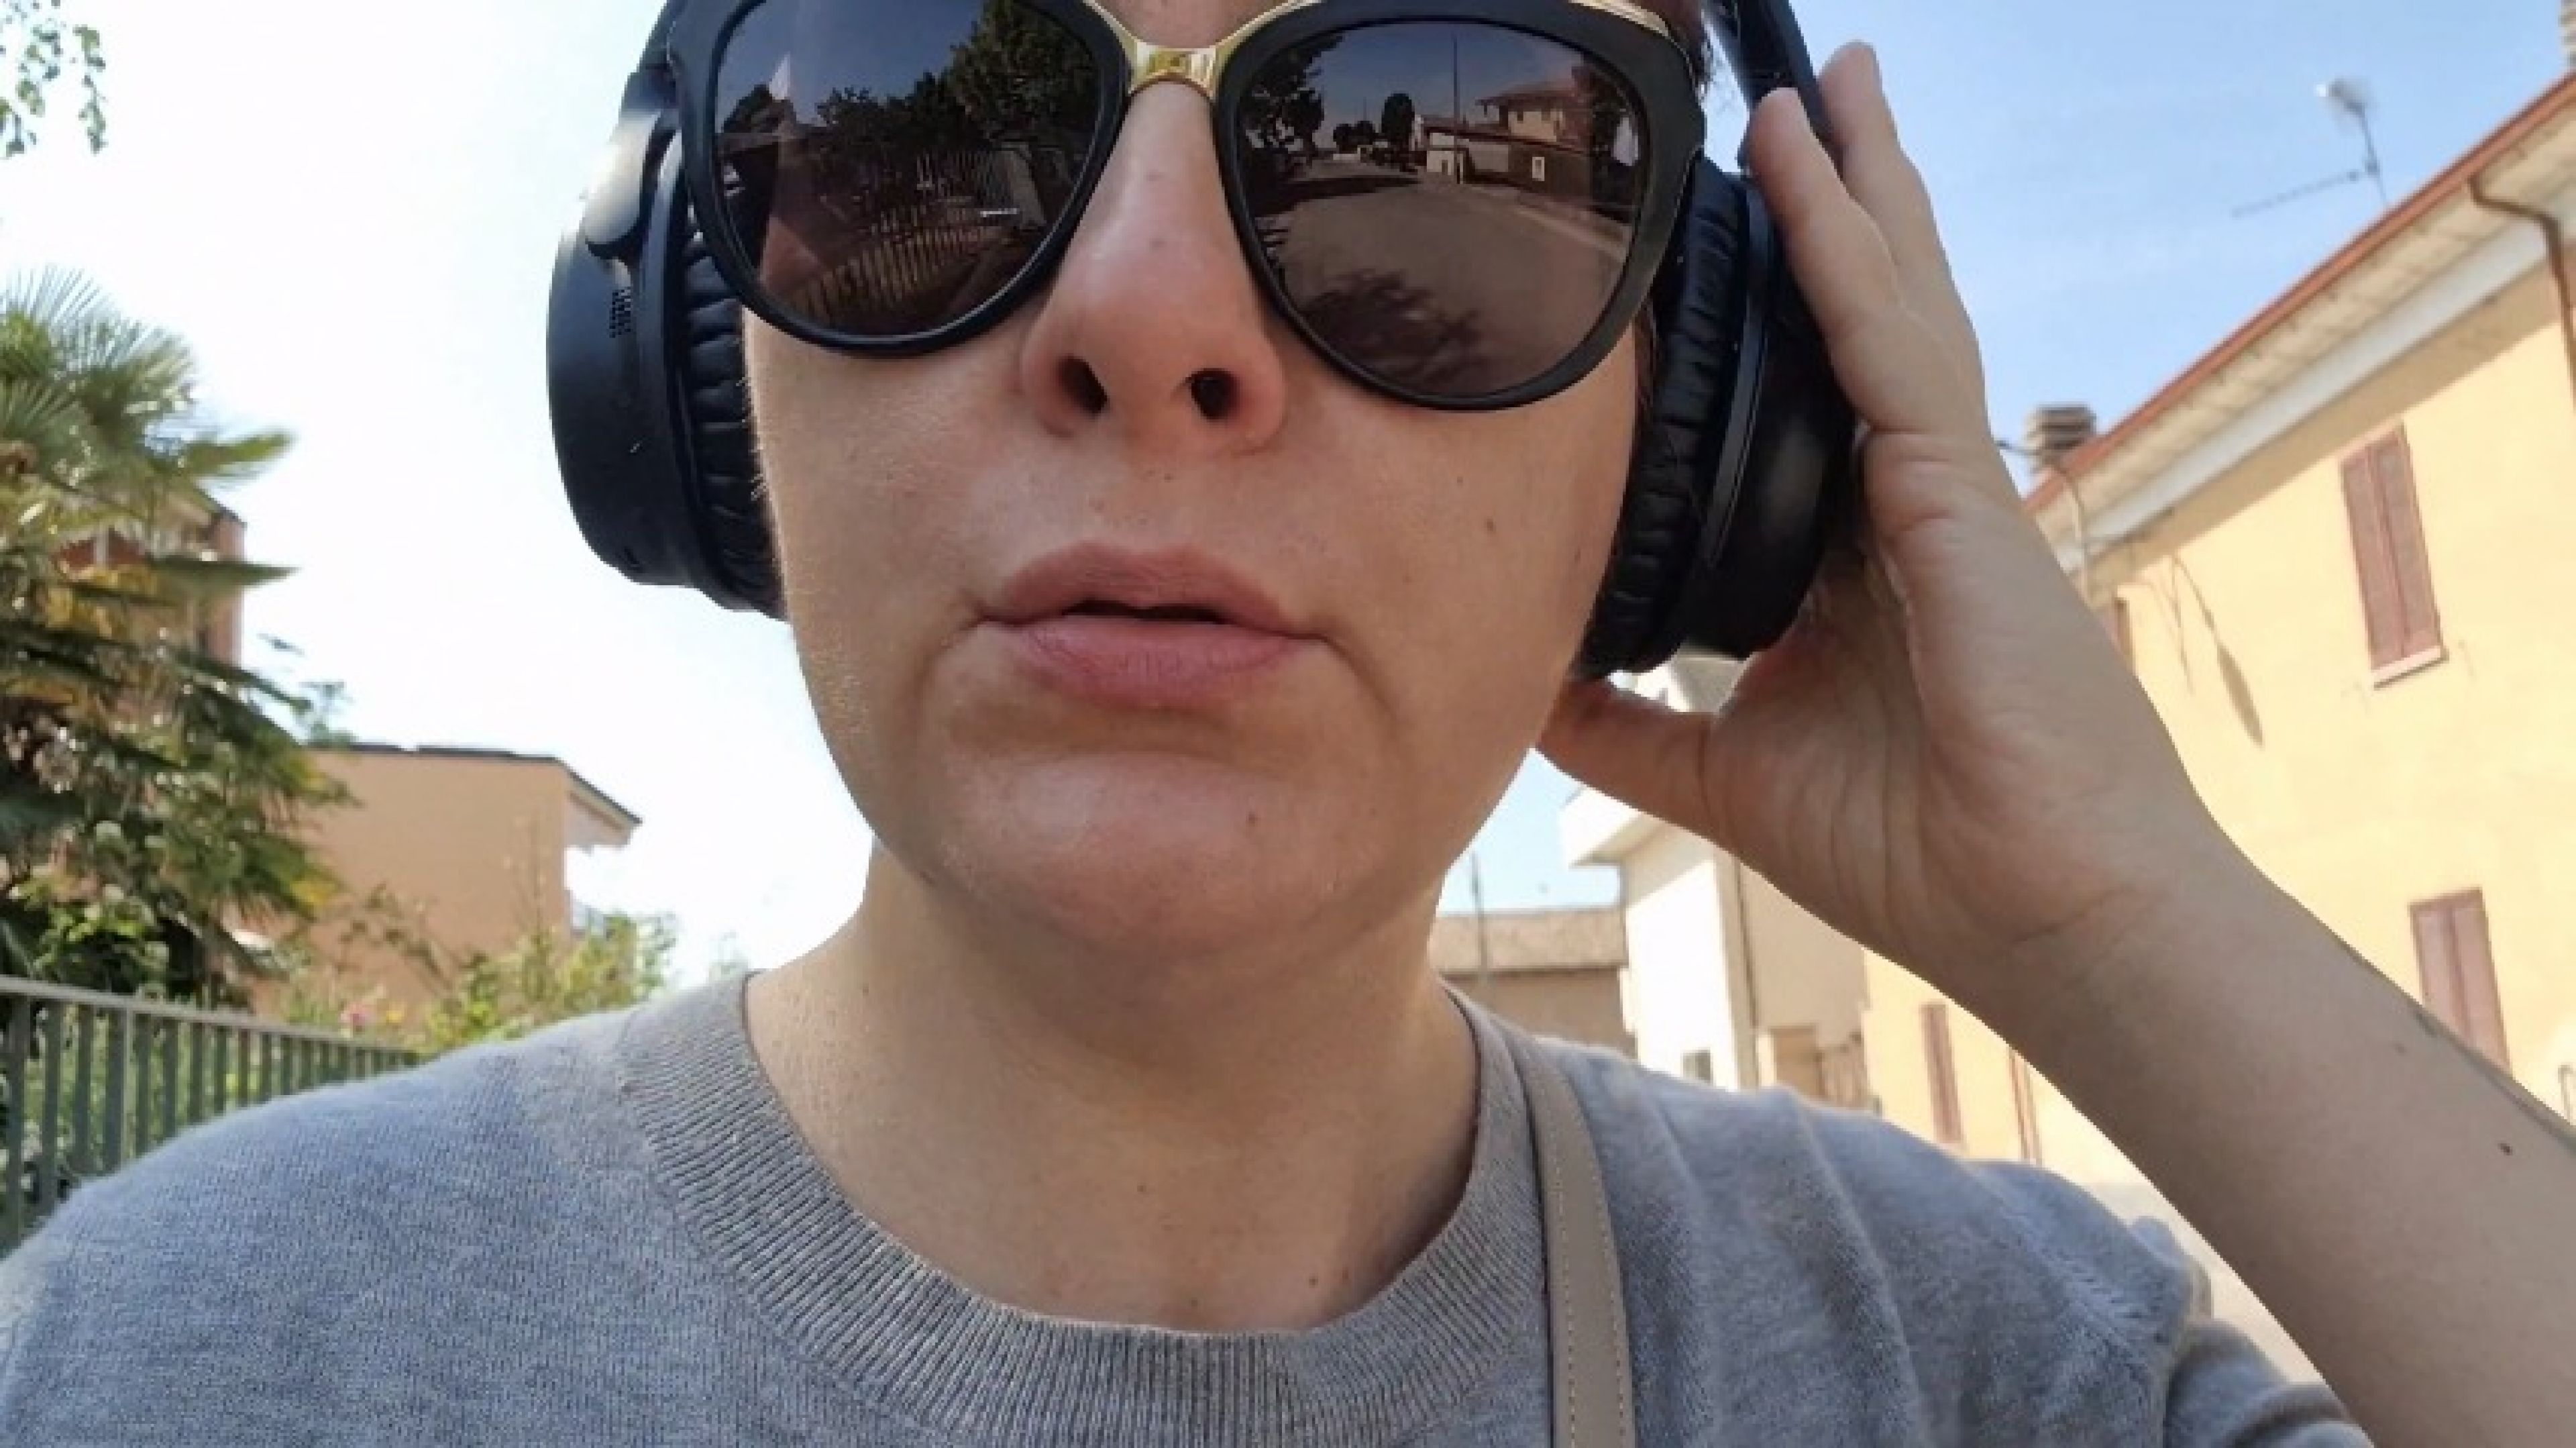 Sneezing on the street wearing my Bose headphones